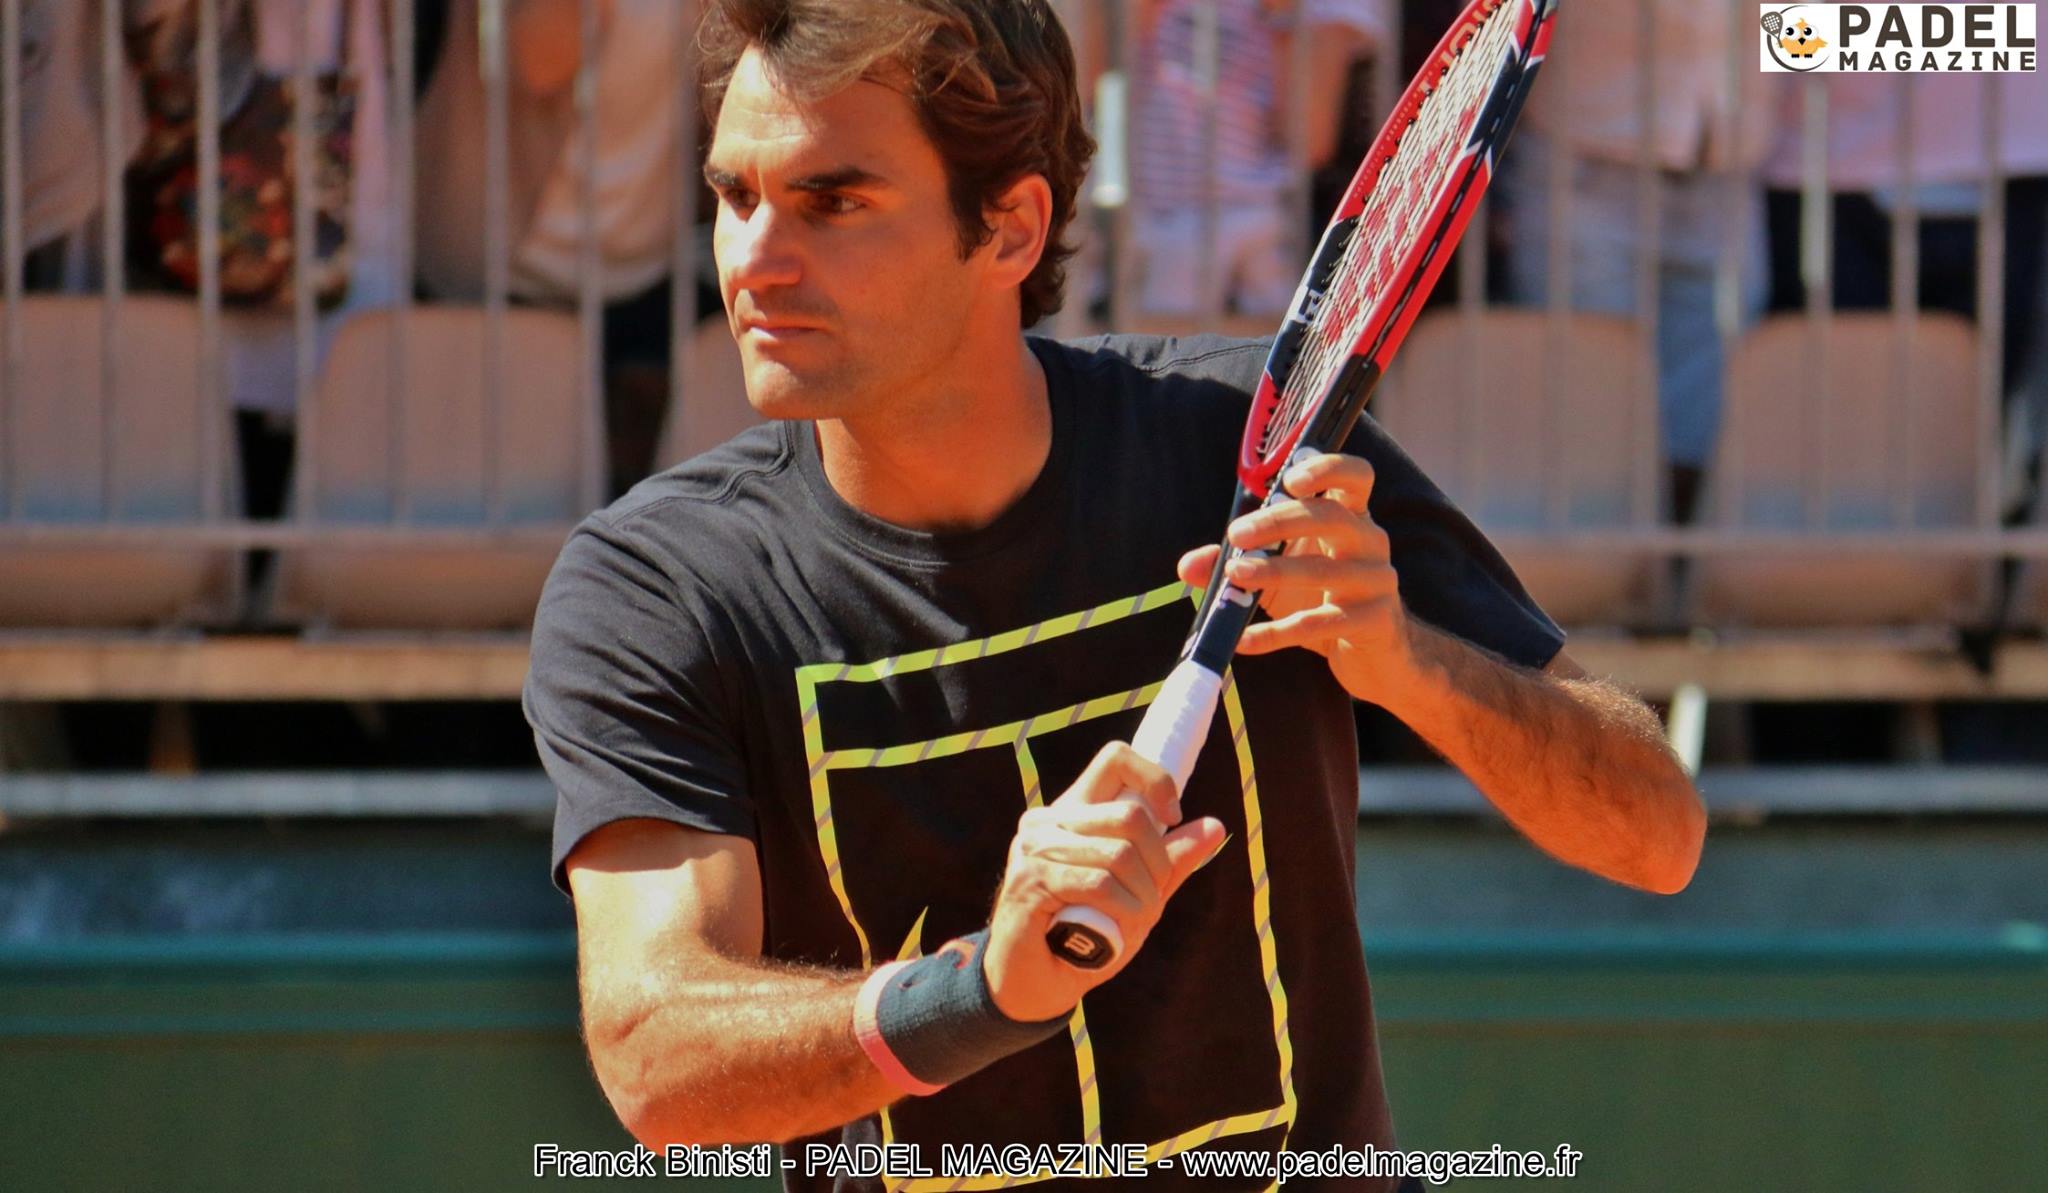 Roger Federer un futur grand du padel ?